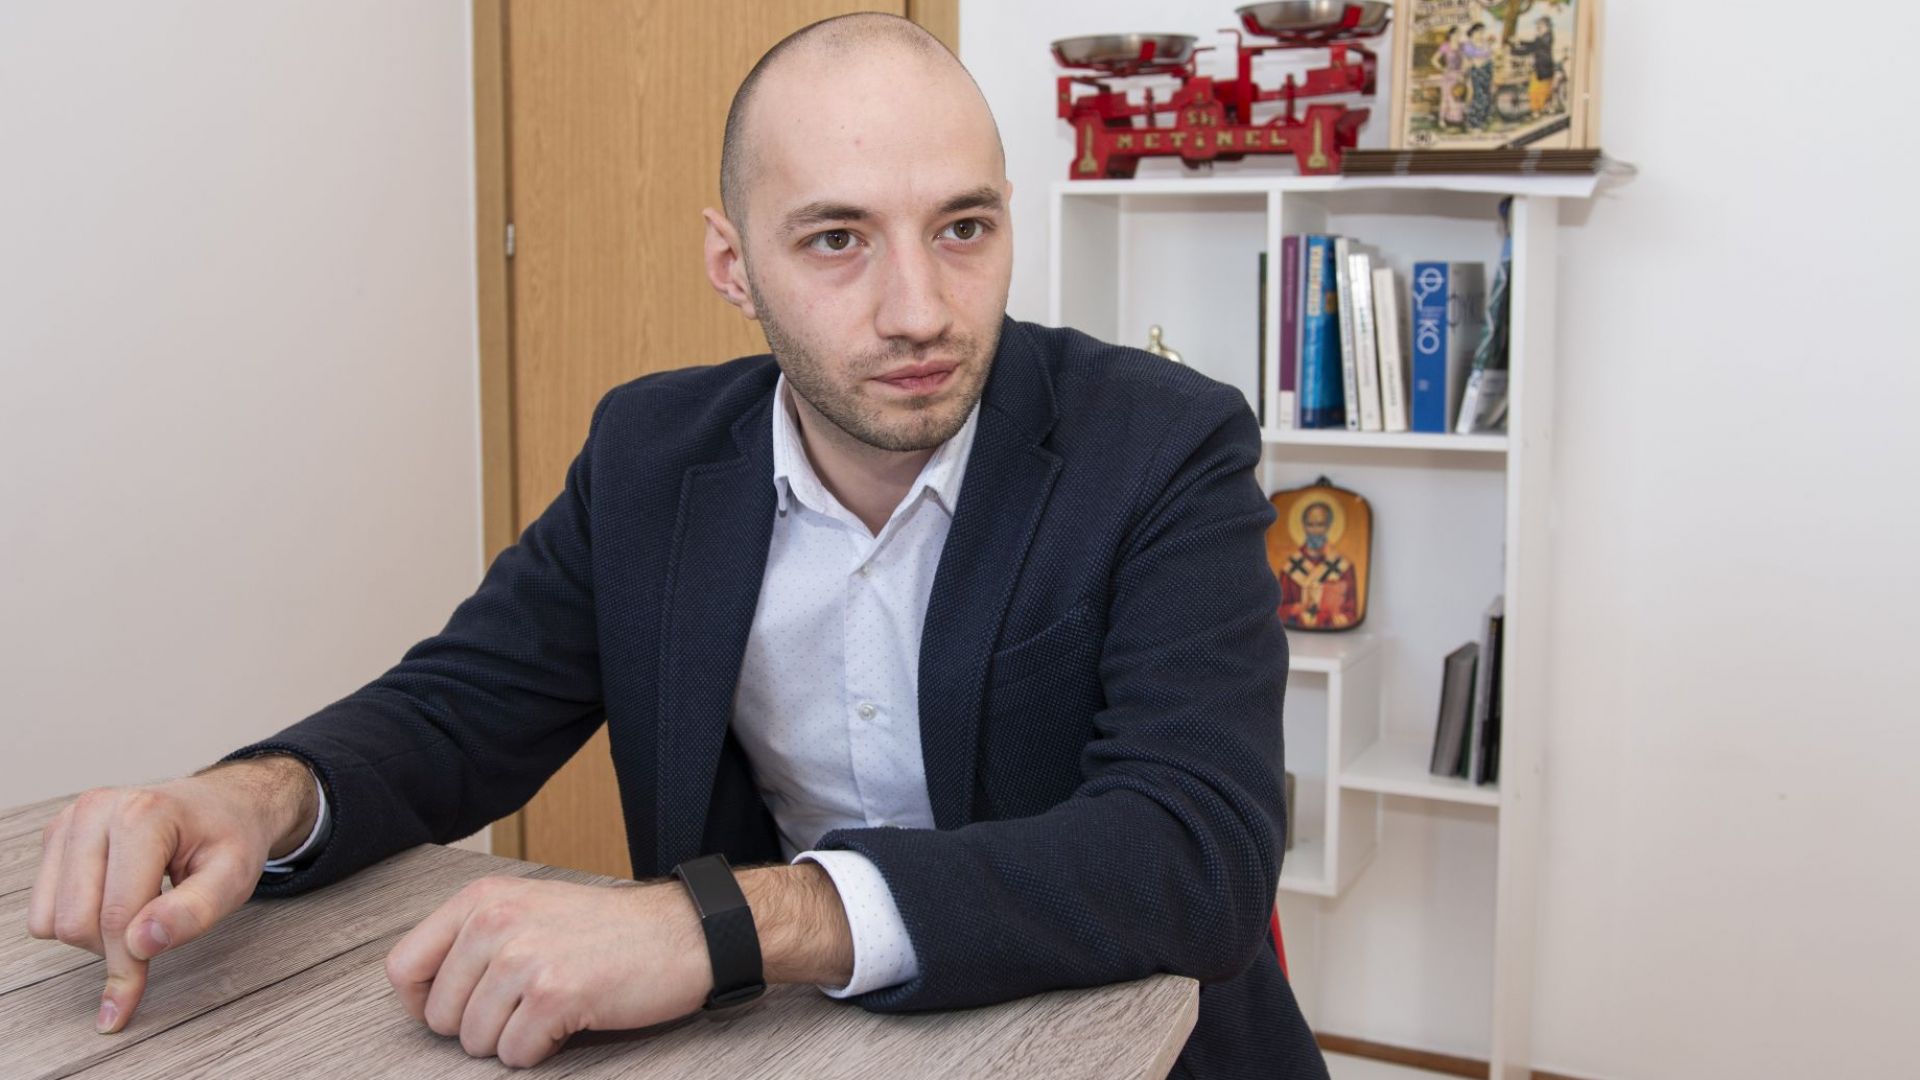 Димитър Ганев: Няма опасност за "Борисов 3", и да подаде оставка, премиерът може да състави нов кабинет